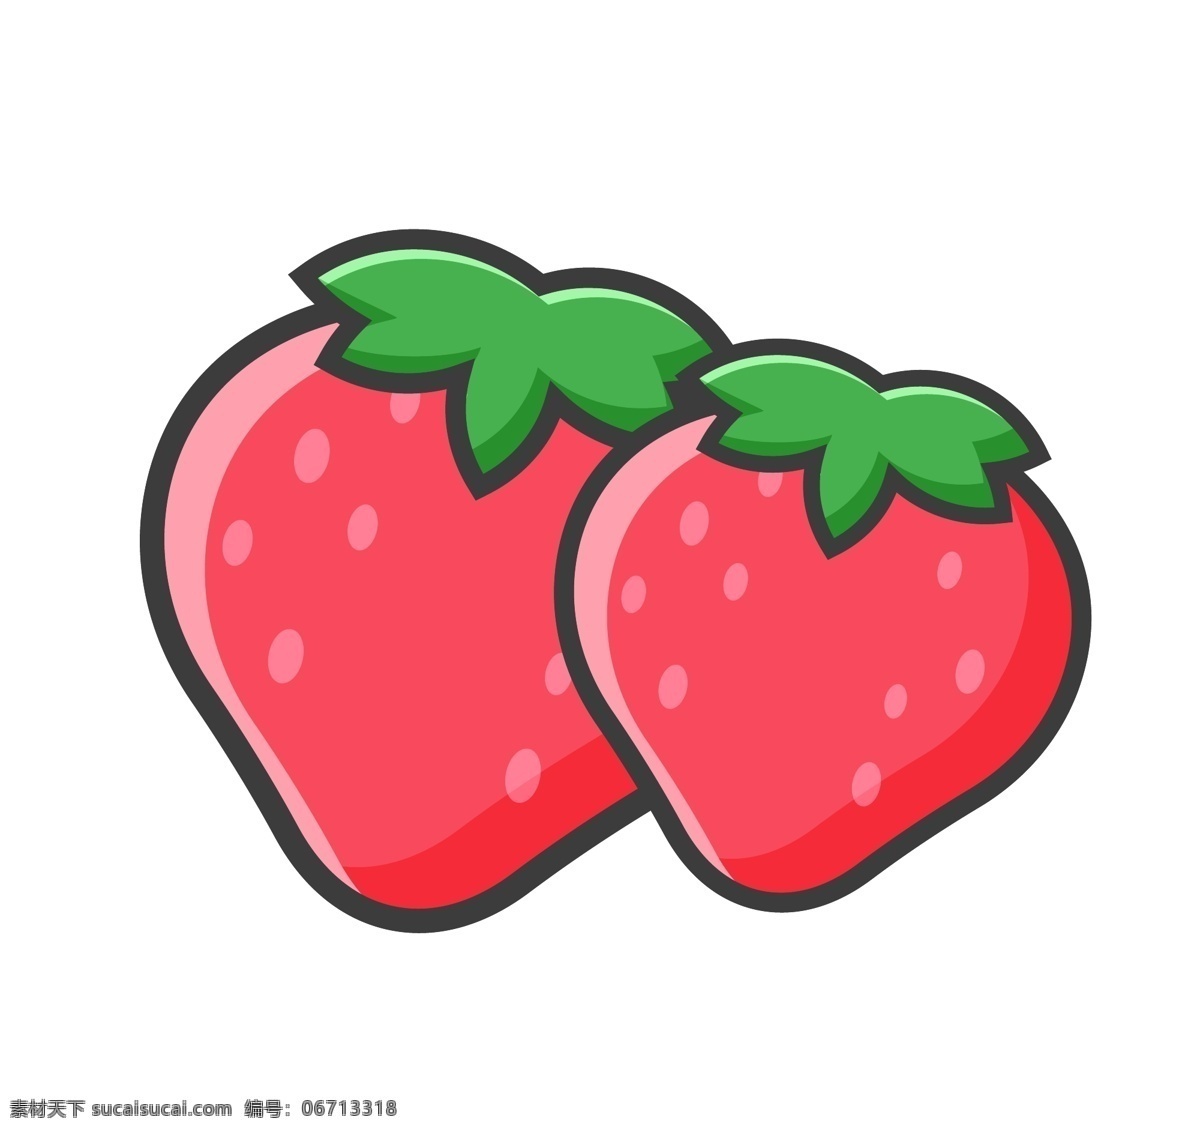 手绘草莓 卡通草莓 草莓口味 草莓味 草莓包装盒 草莓包装袋 草莓素材 水果 草莓 草莓汁 草莓干 新鲜草莓 元素